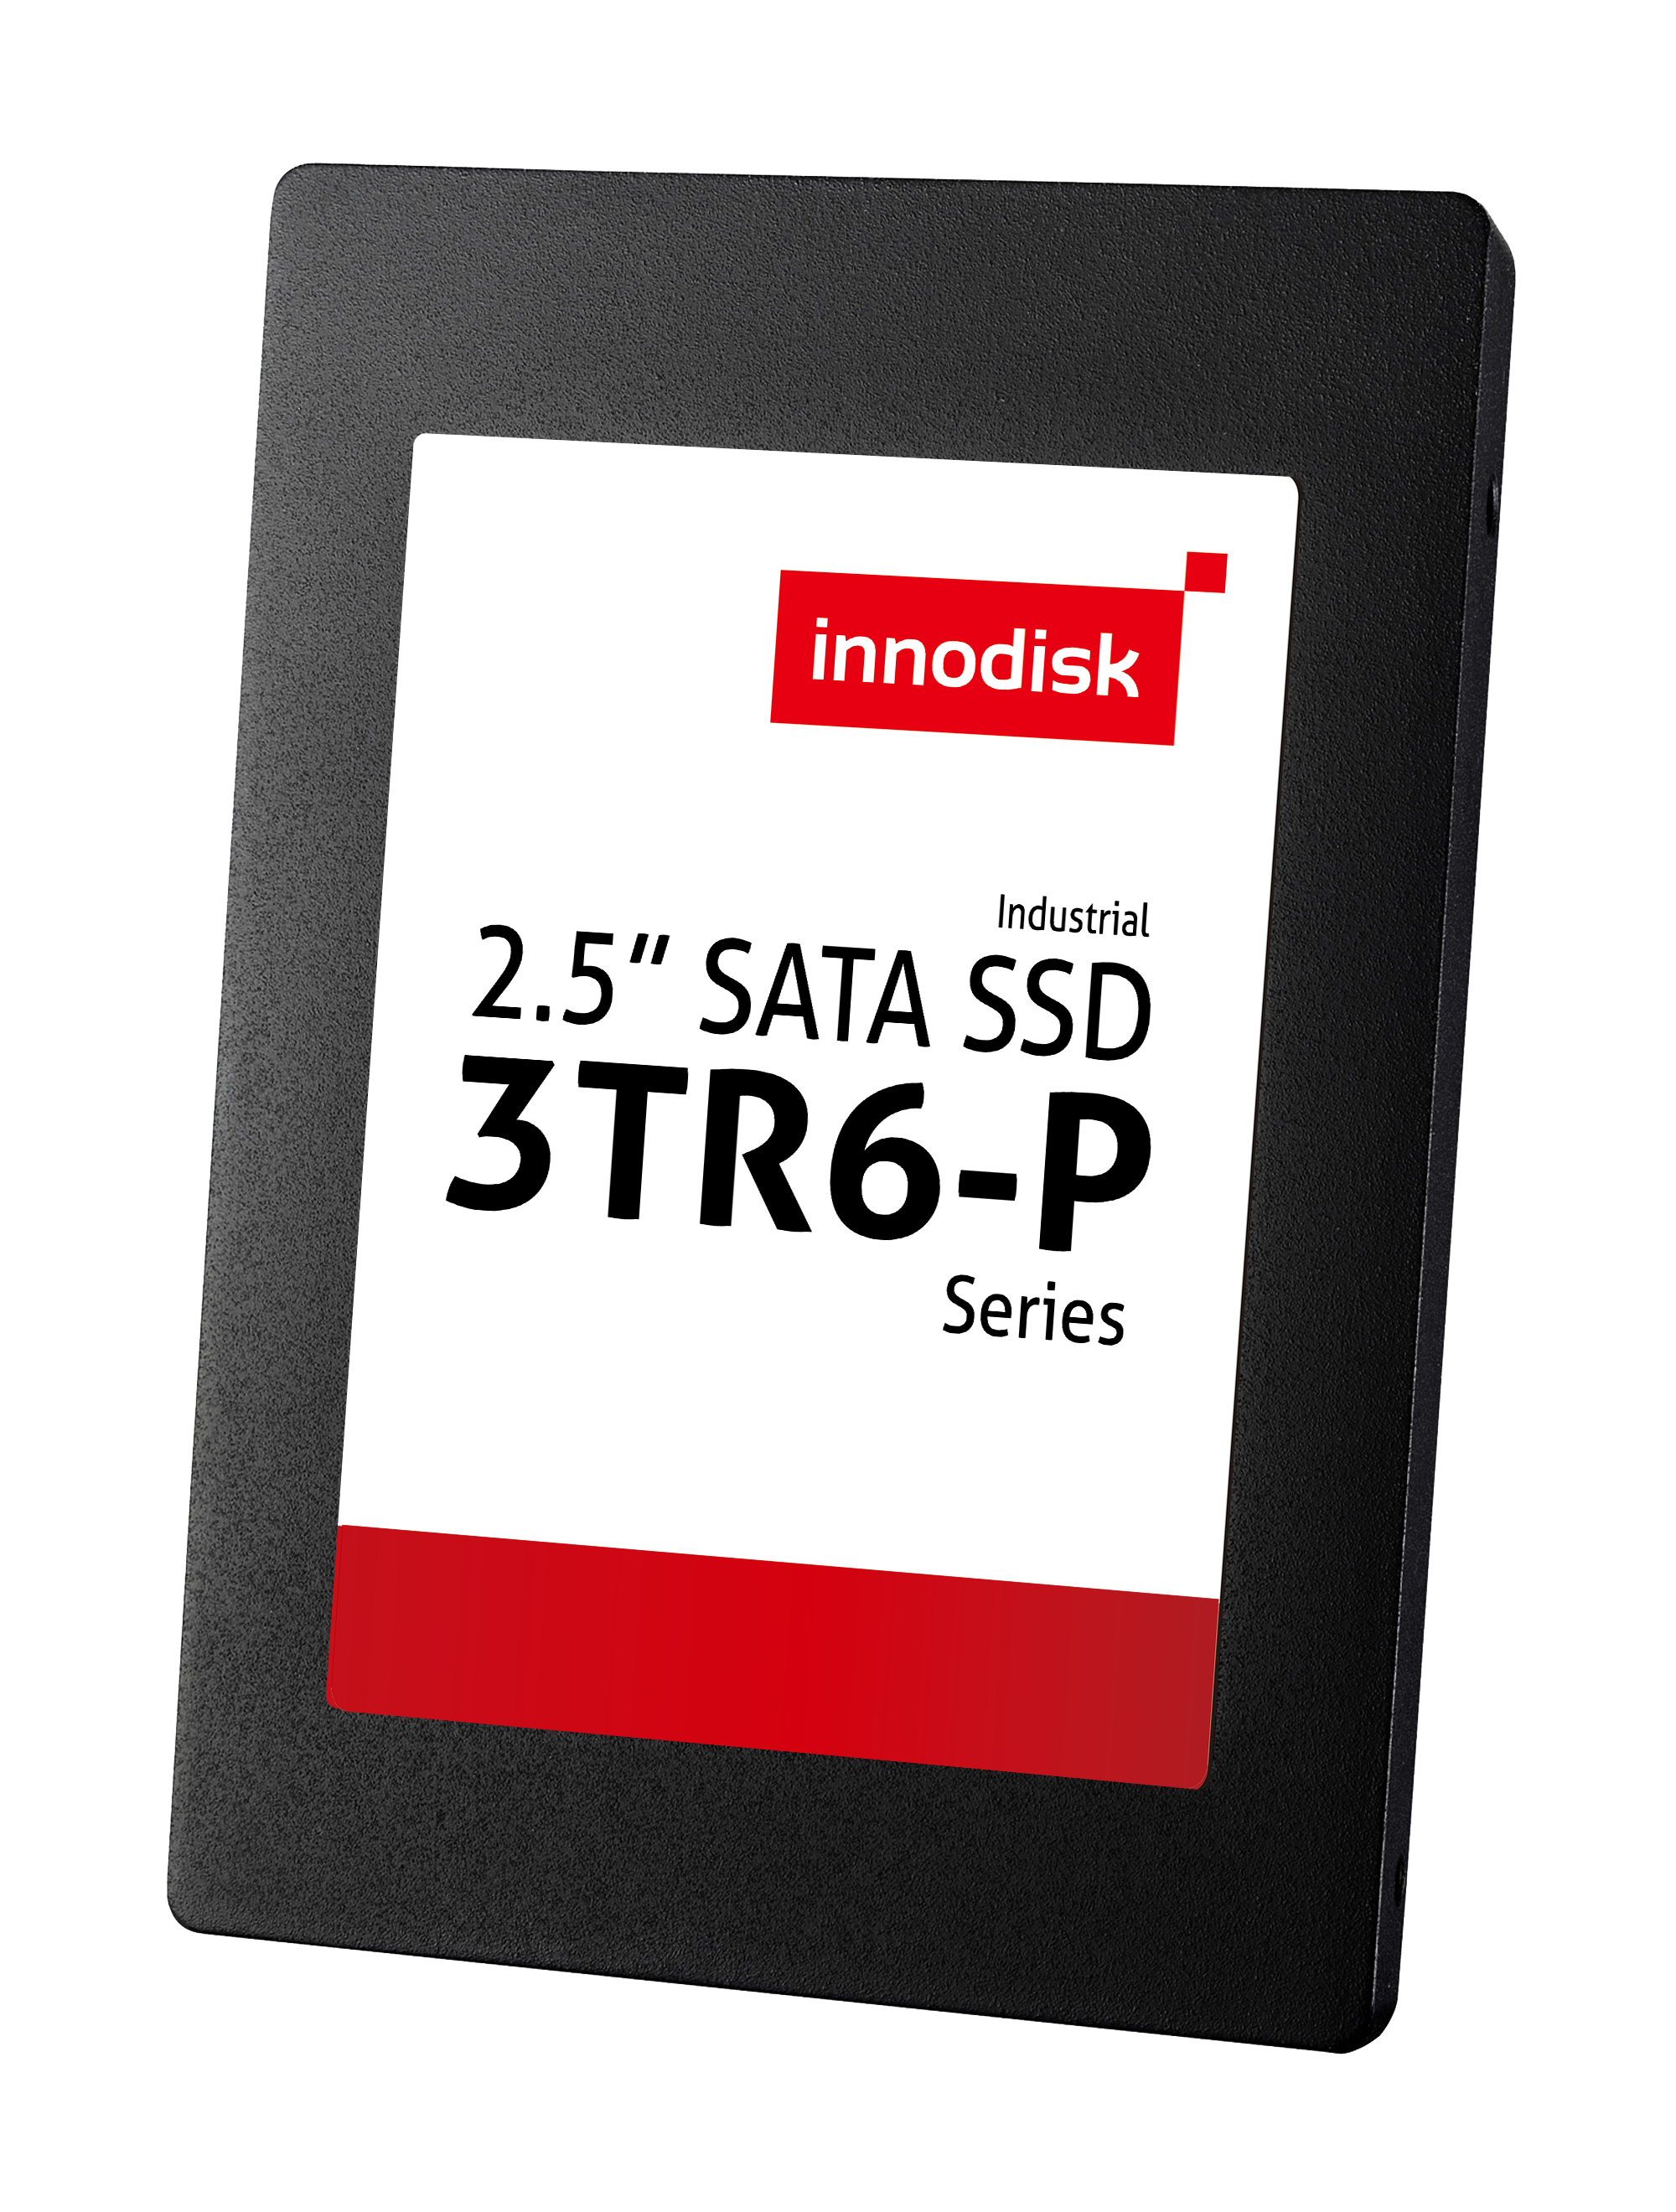 2.5" SATA SSD, InnoRobust, 3TR6-P, TLC